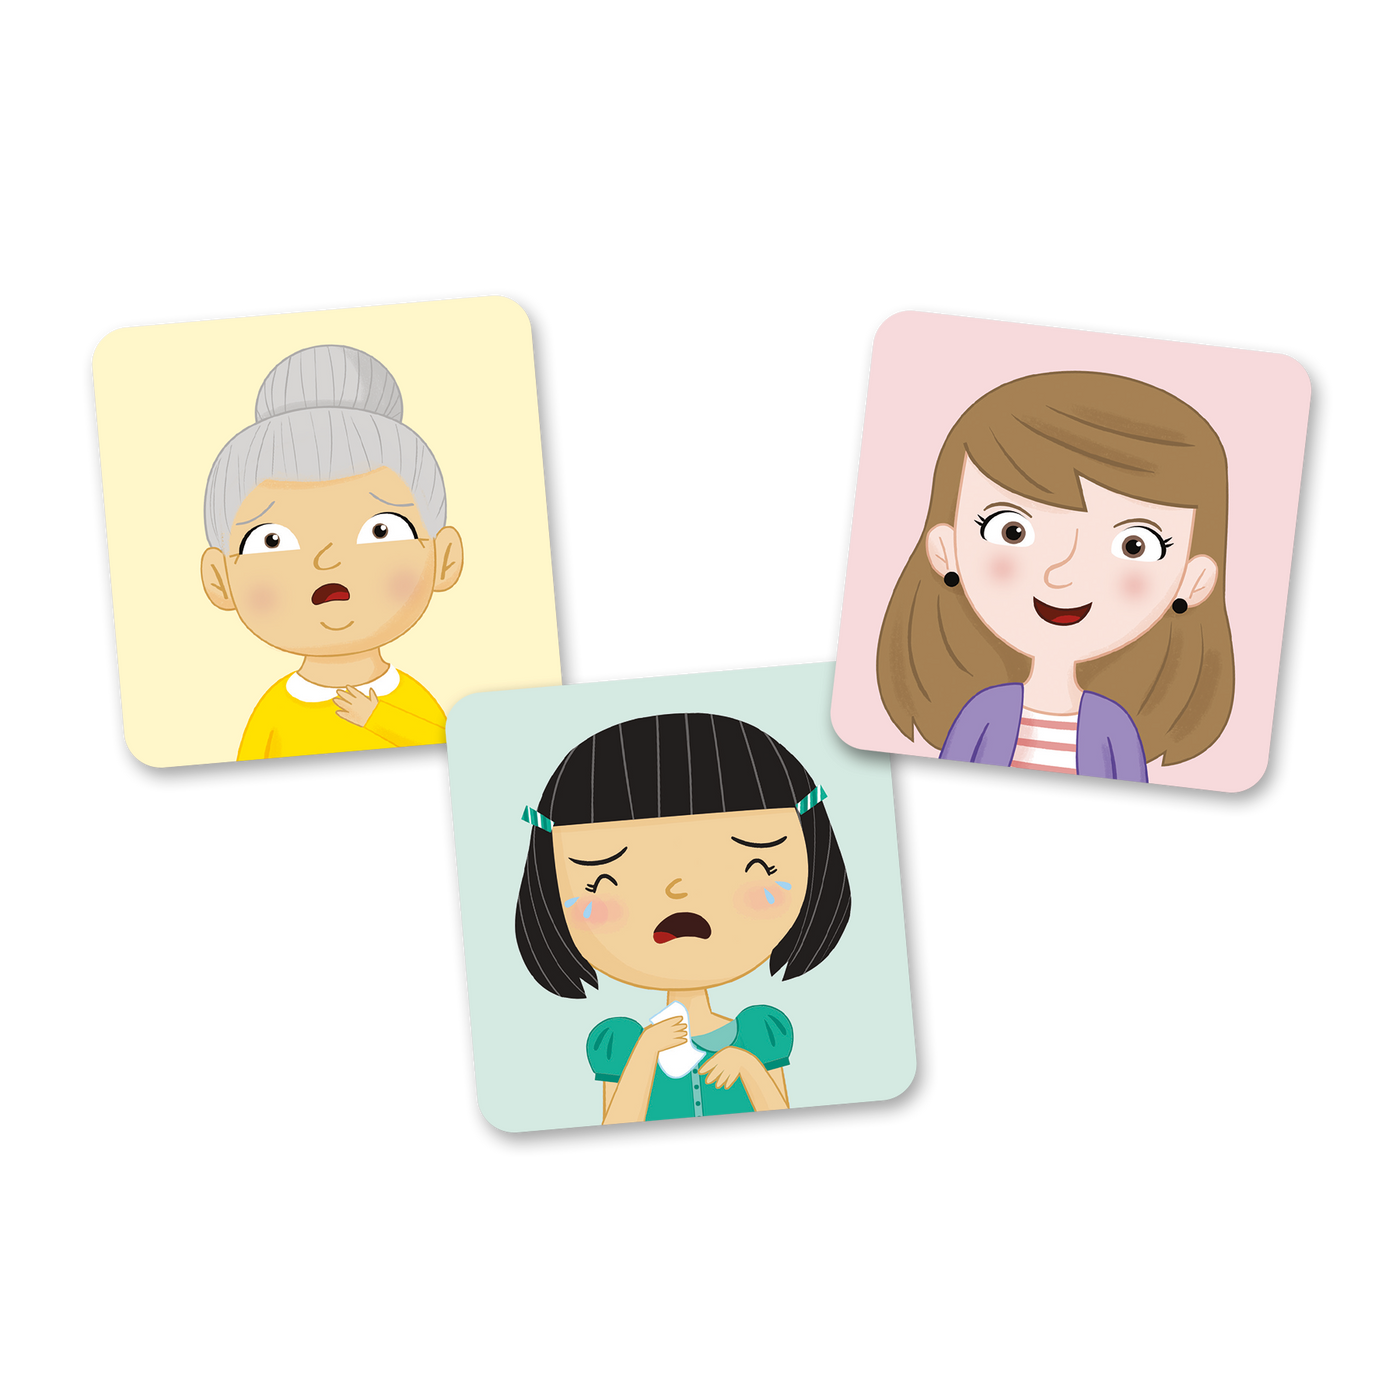 Loto des émotions - Exemples de cartes-images du jeu : grand-mère qui a peur, mère joyeuse et petite fille triste